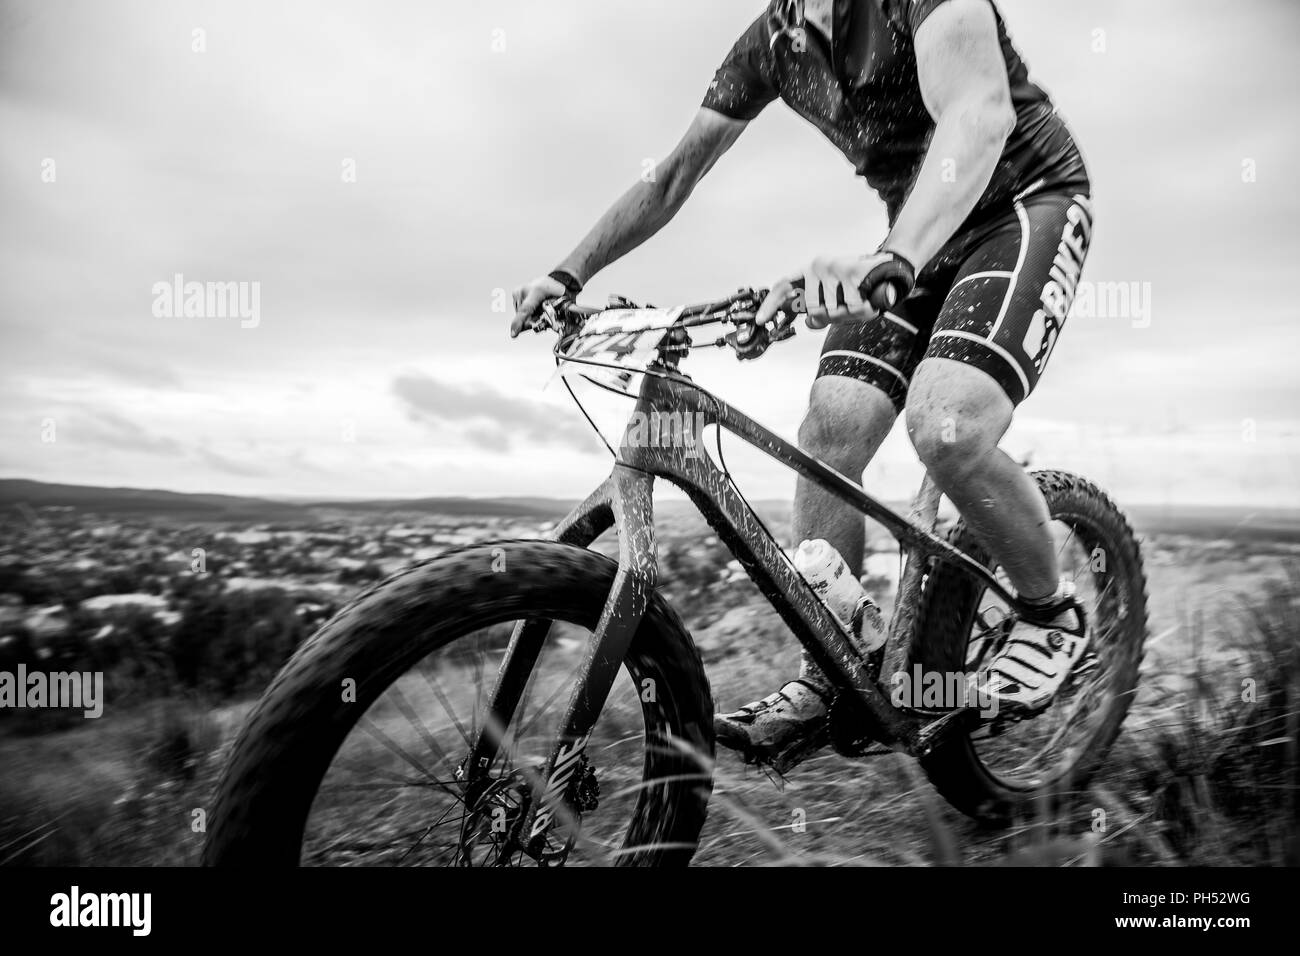 V.Ufaley, Russia - Agosto 12, 2018: racer ciclista mountain biker in spray di fango durante la gara XCM Big Stone Foto Stock